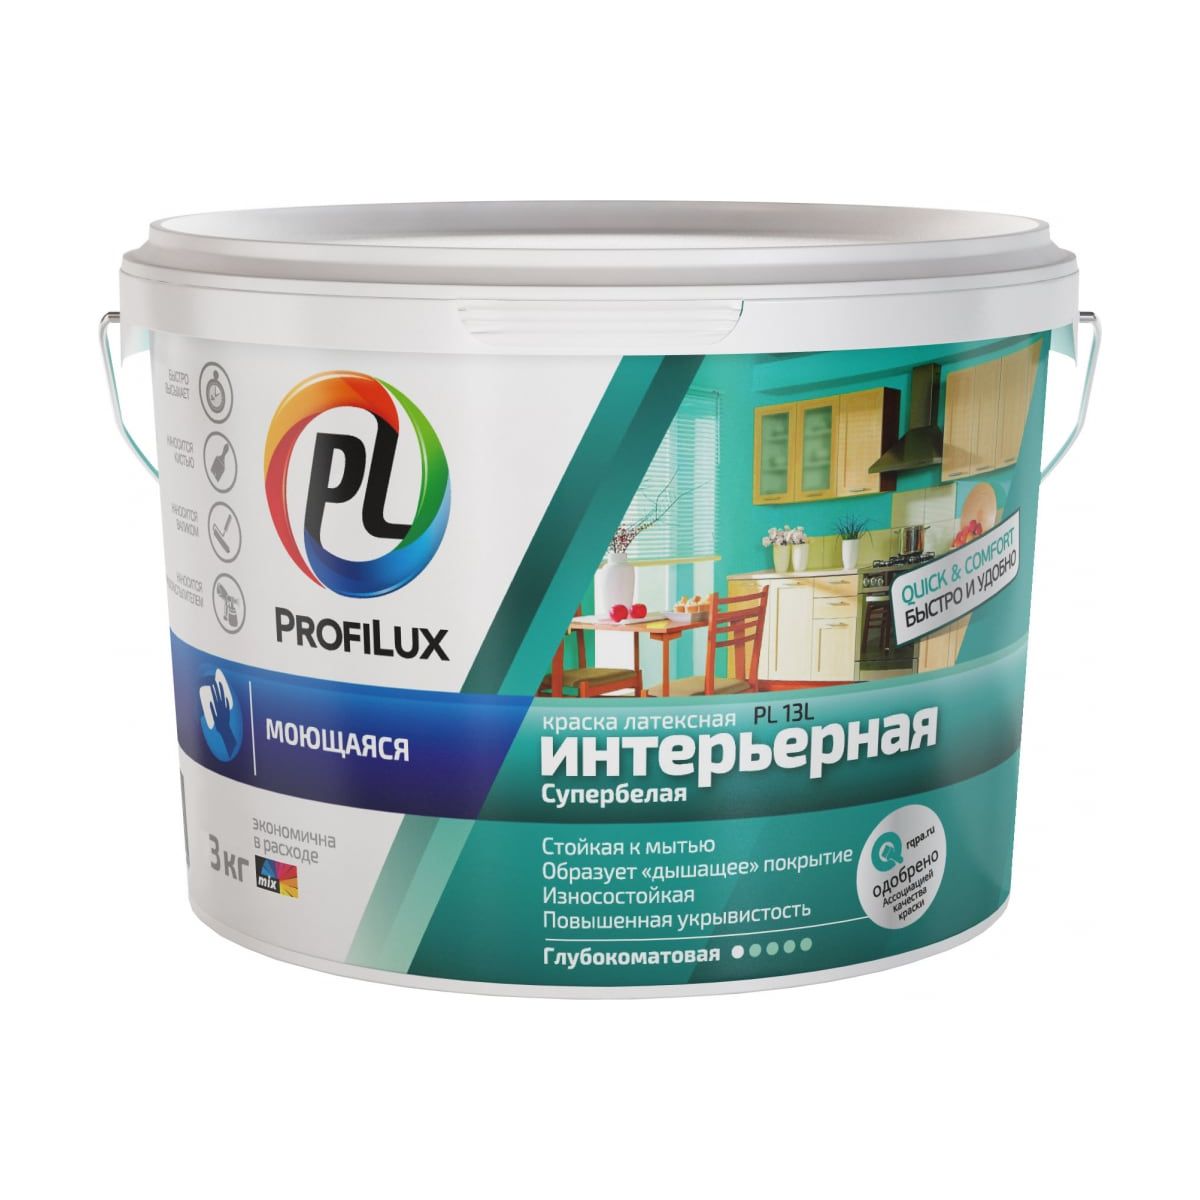 фото Краска для стен и потолков profilux pl-13l,вд,латексная, моющаяся, супербелая, база1, 3 кг